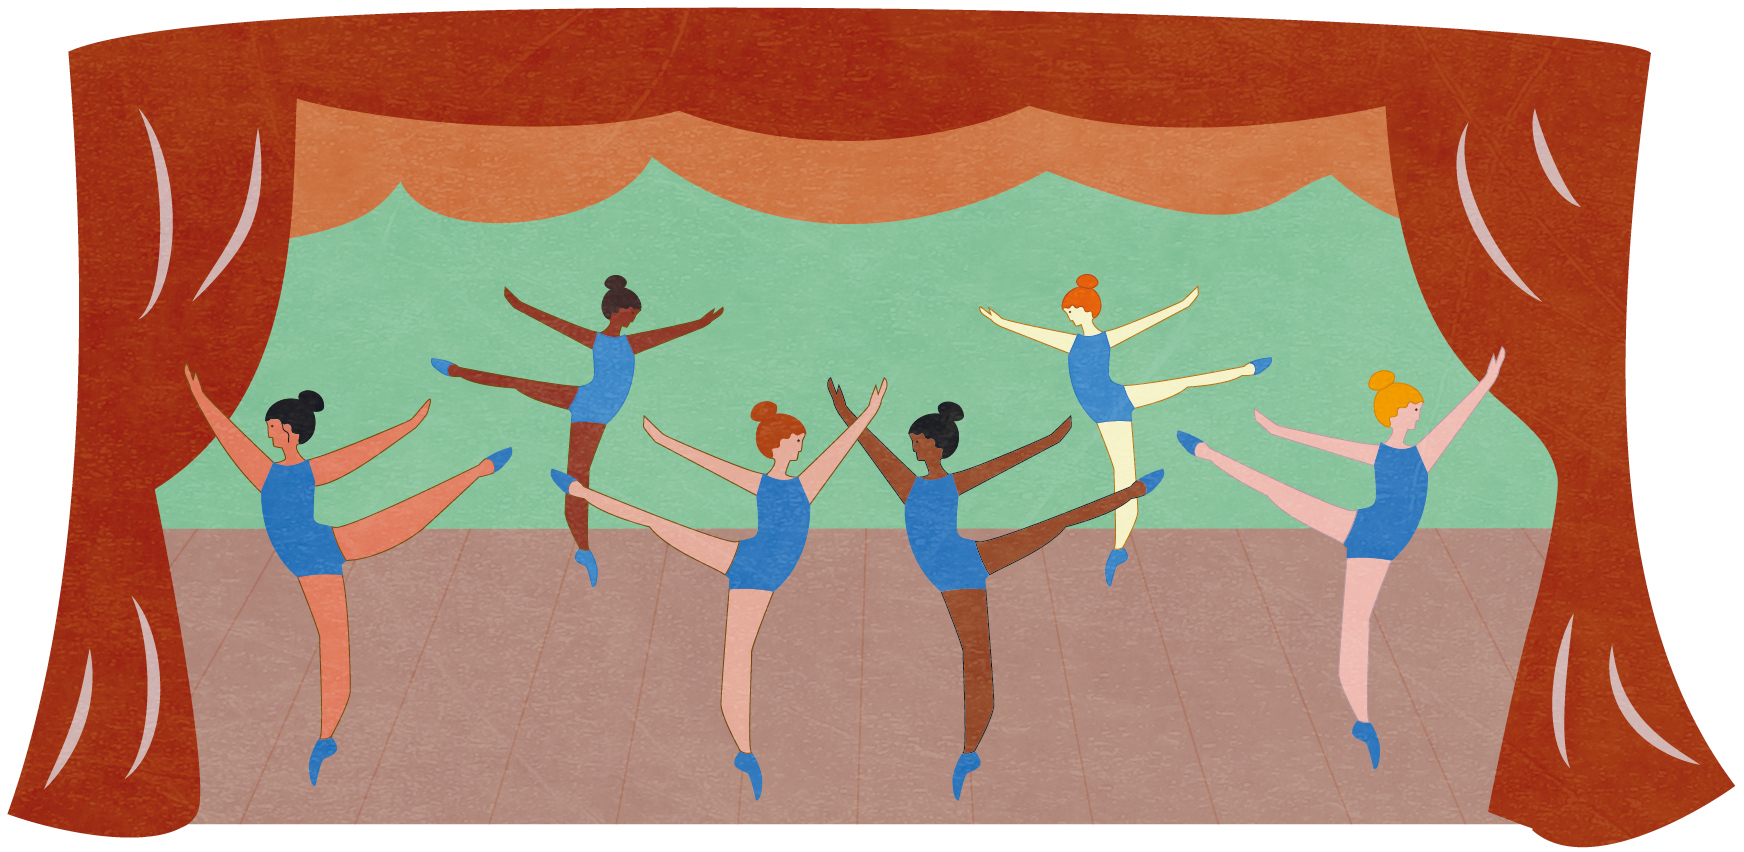 Ilustração. Sobre um palco, usando maiôs azuis, seis bailarinas fazem movimentos identicos: equilibrando-se na ponta dos pés, elas  levantam uma das pernas e esticam os braços para o alto. Todas estão com os cabelos presos em coque.